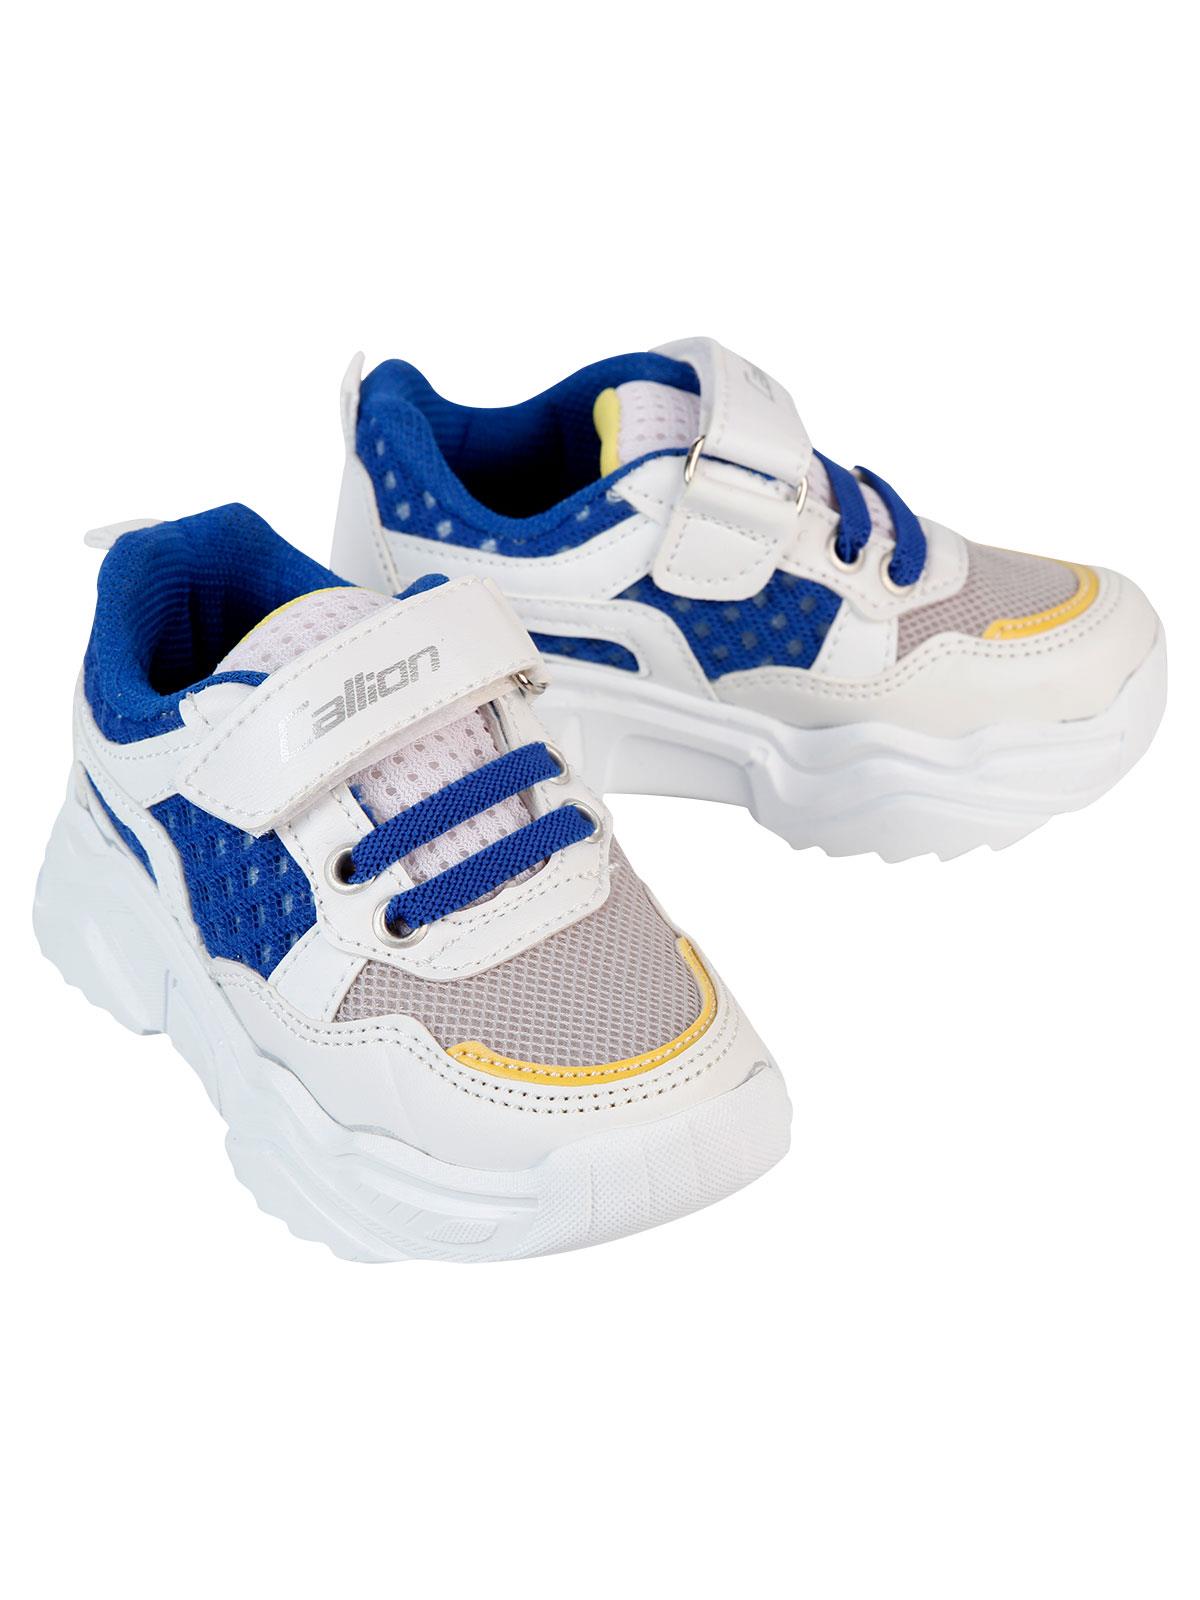 Callion Erkek Çocuk Spor Ayakkabı 22-25 Numara Beyaz